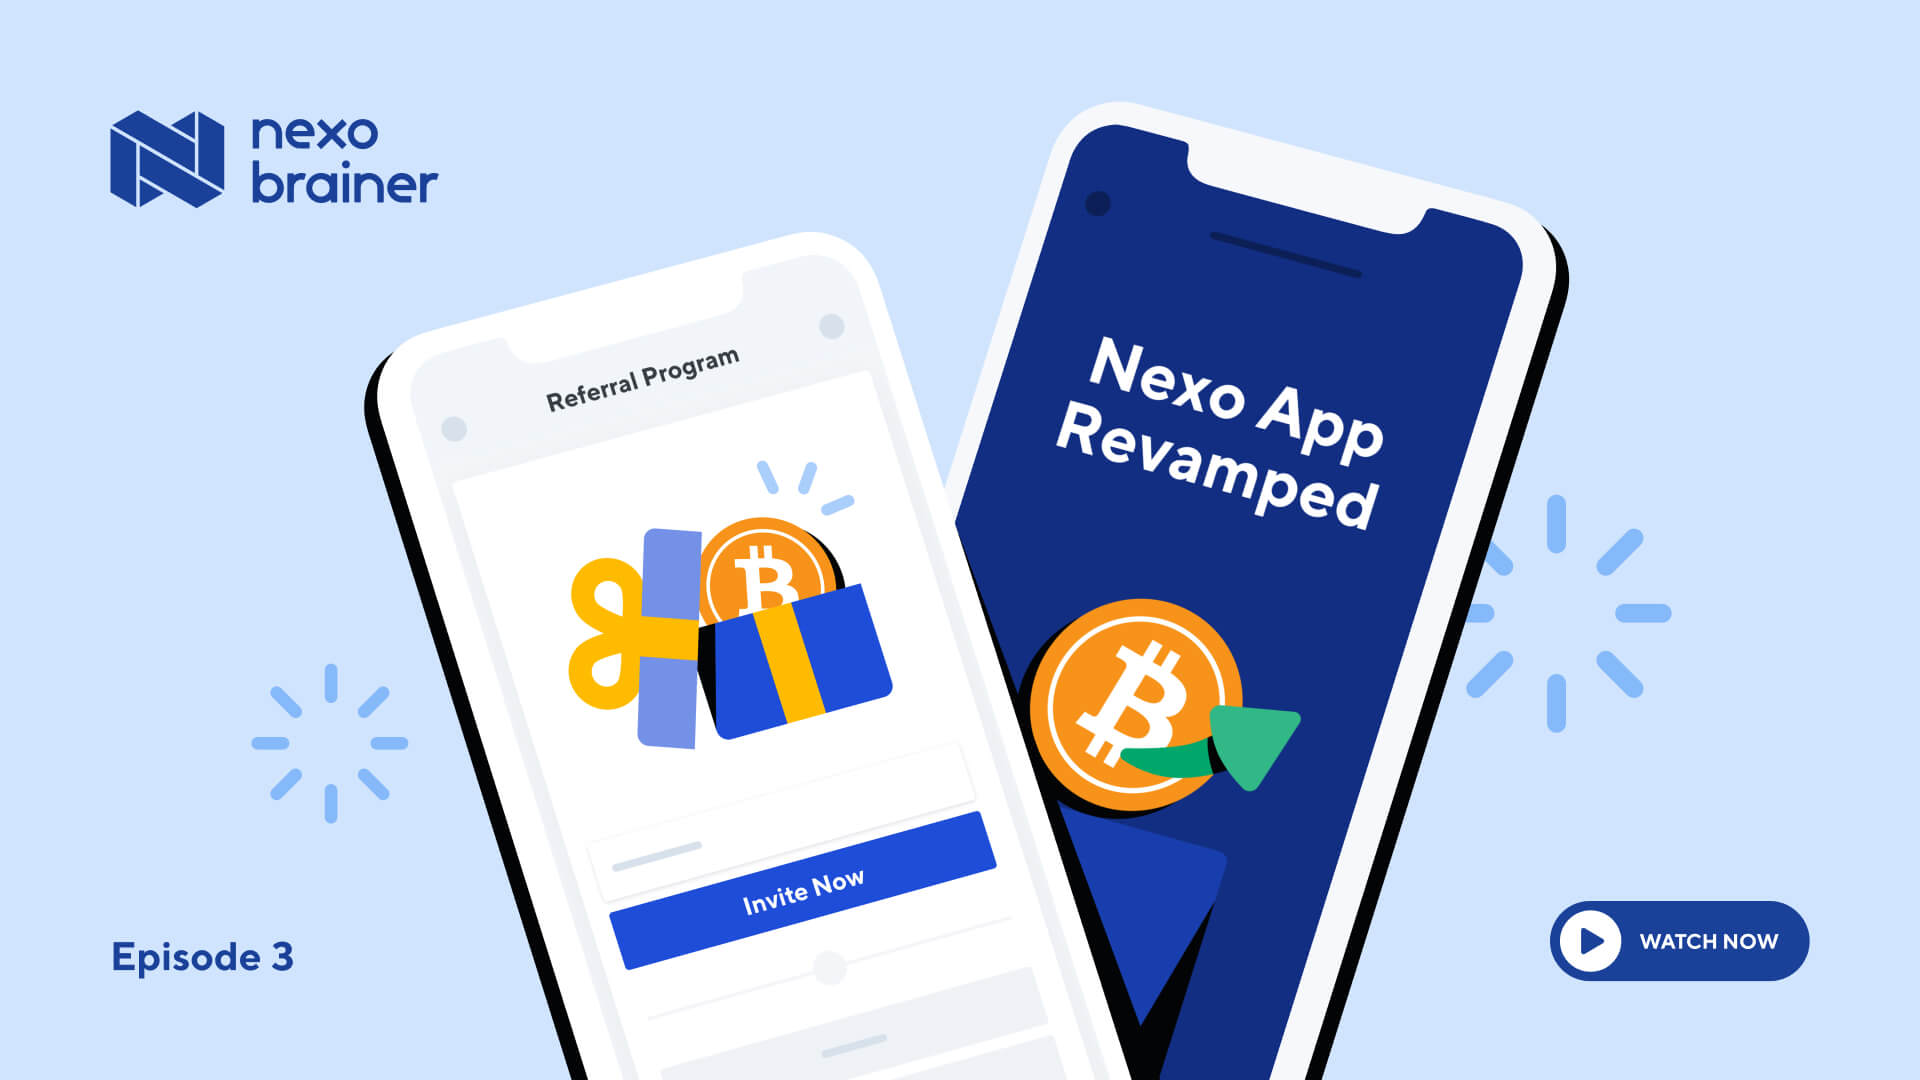 Nexo Brainer #3: The Referral Program & App 2.0